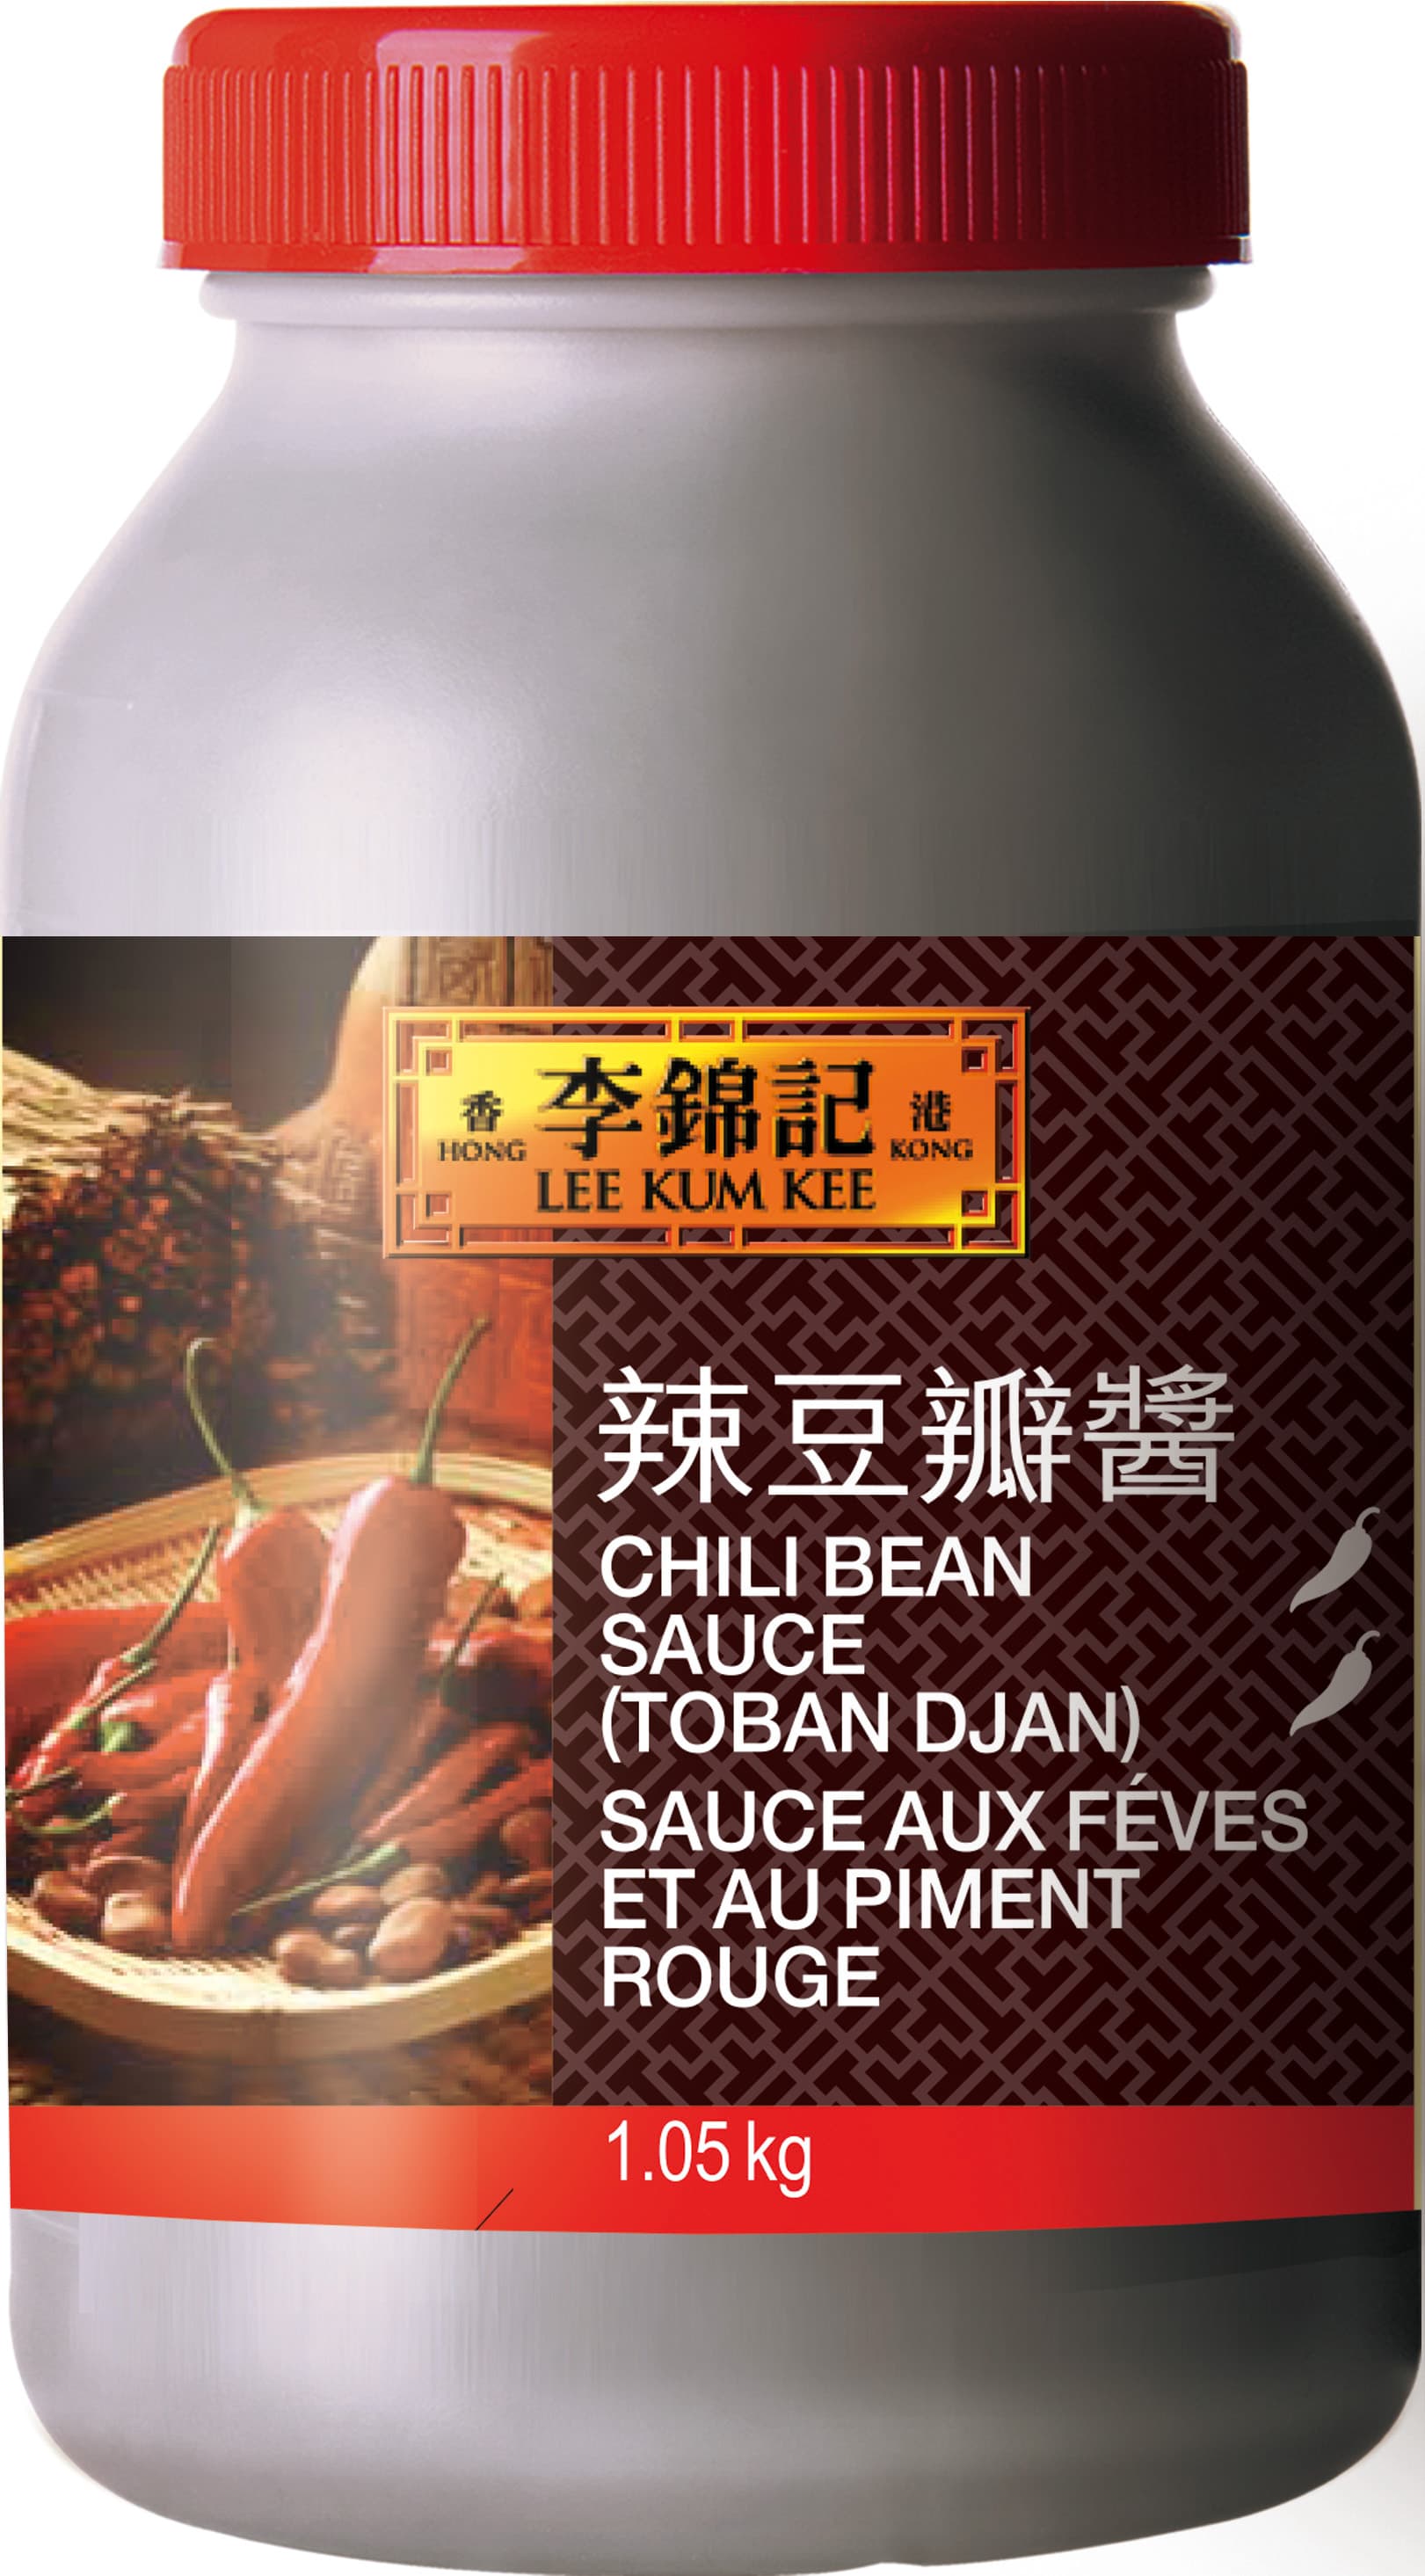 Sauce aux fèves et au piment rouge (Doubanjiang), 1.05 kg pot